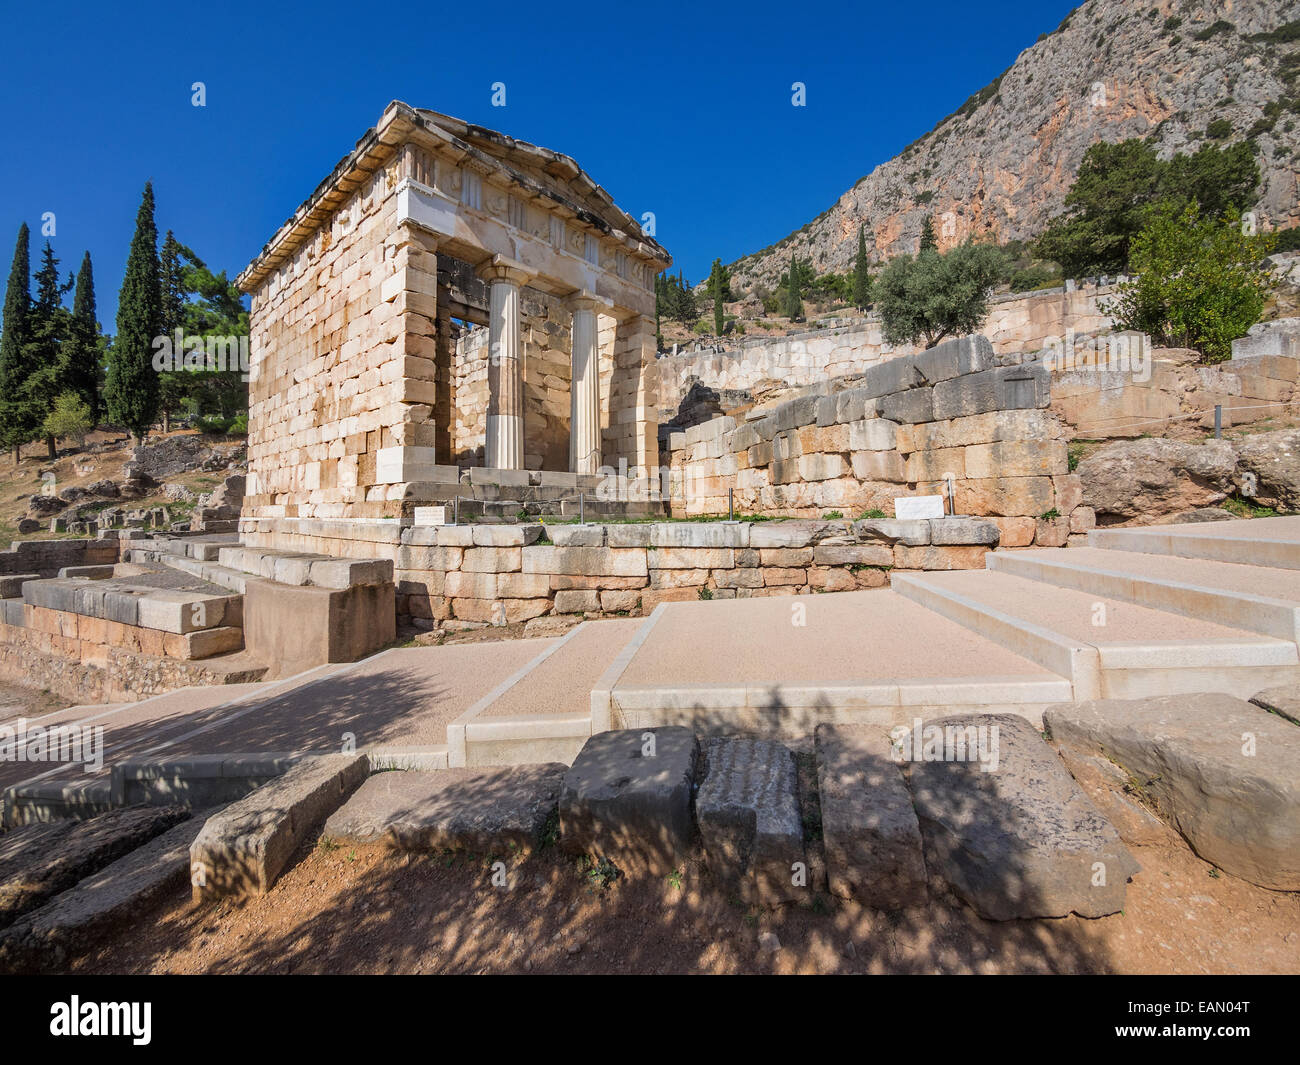 Le Conseil du Trésor reconstruit de Delphes, construite pour célébrer leur victoire à la bataille de Marathon. Grèce Banque D'Images